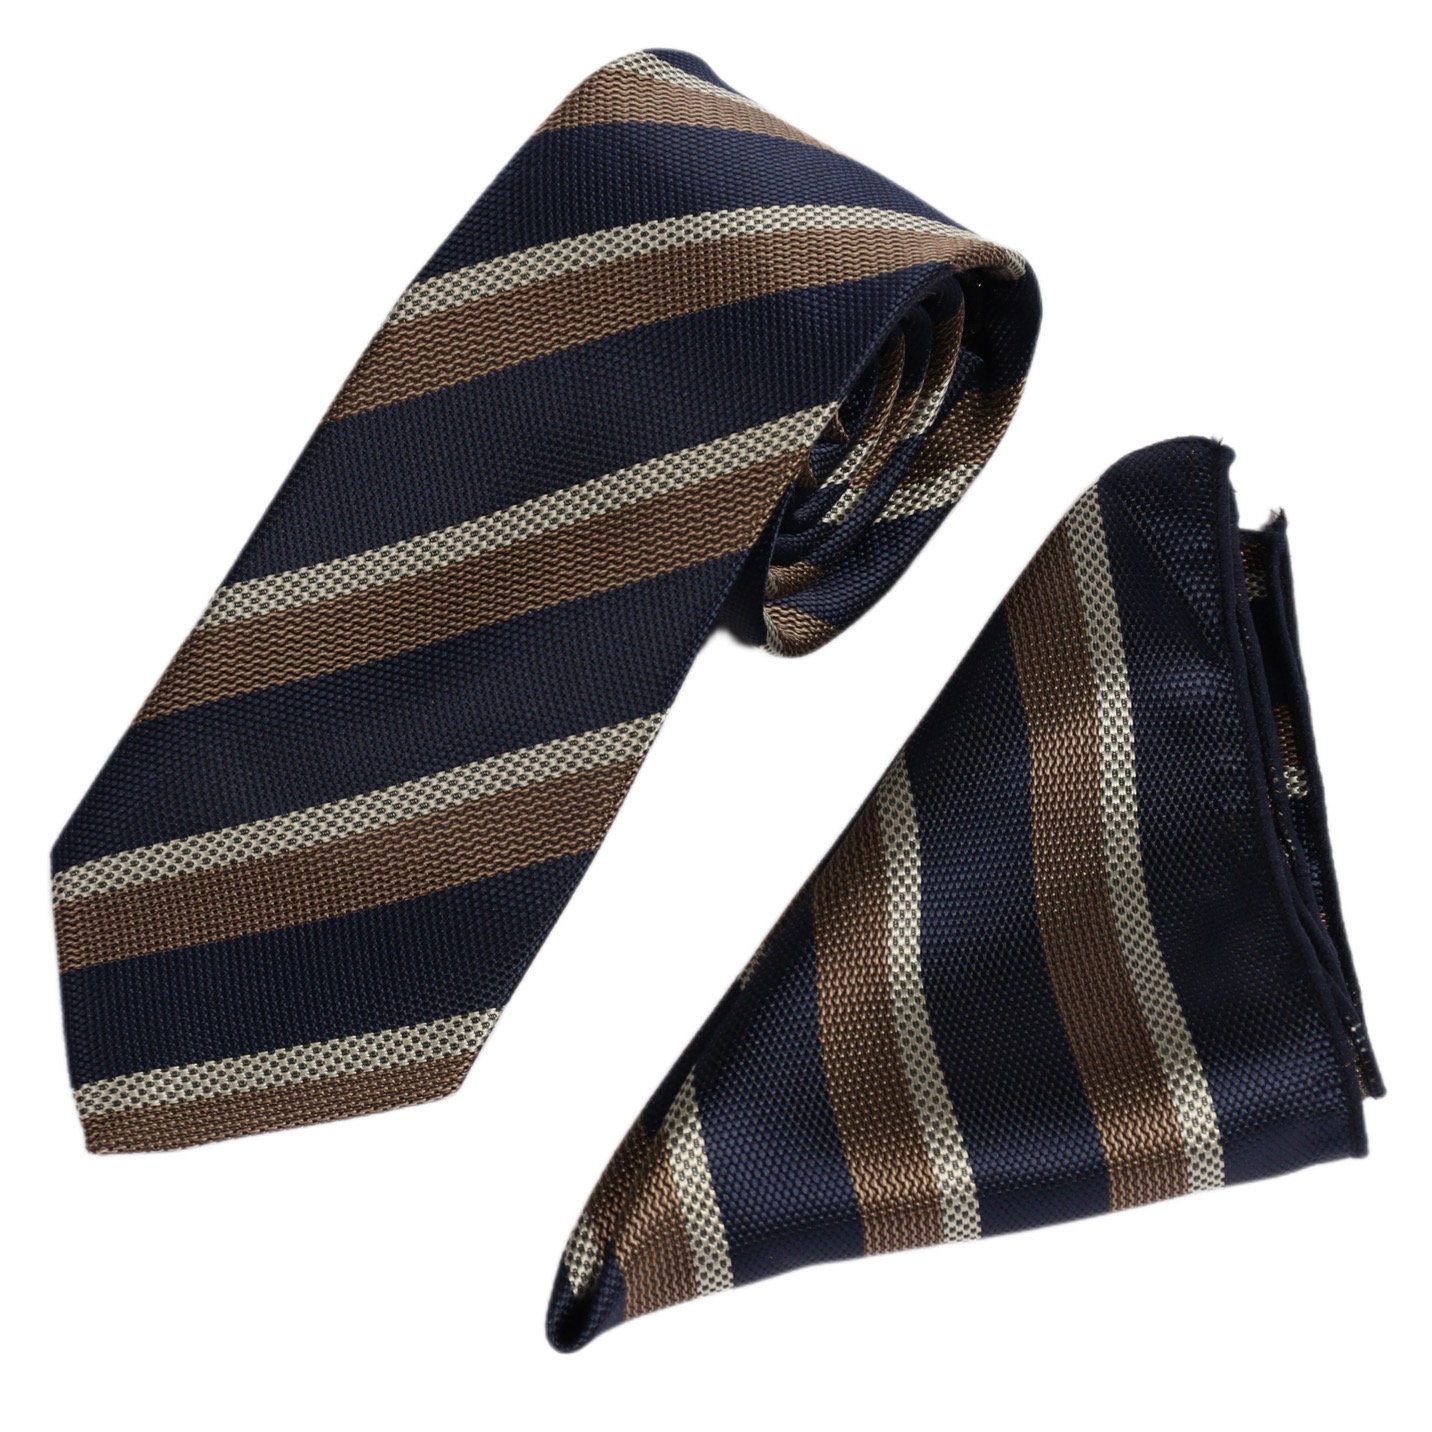 ست کراوات و دستمال جیب مردانه نسن طرح کجراه مدل T80